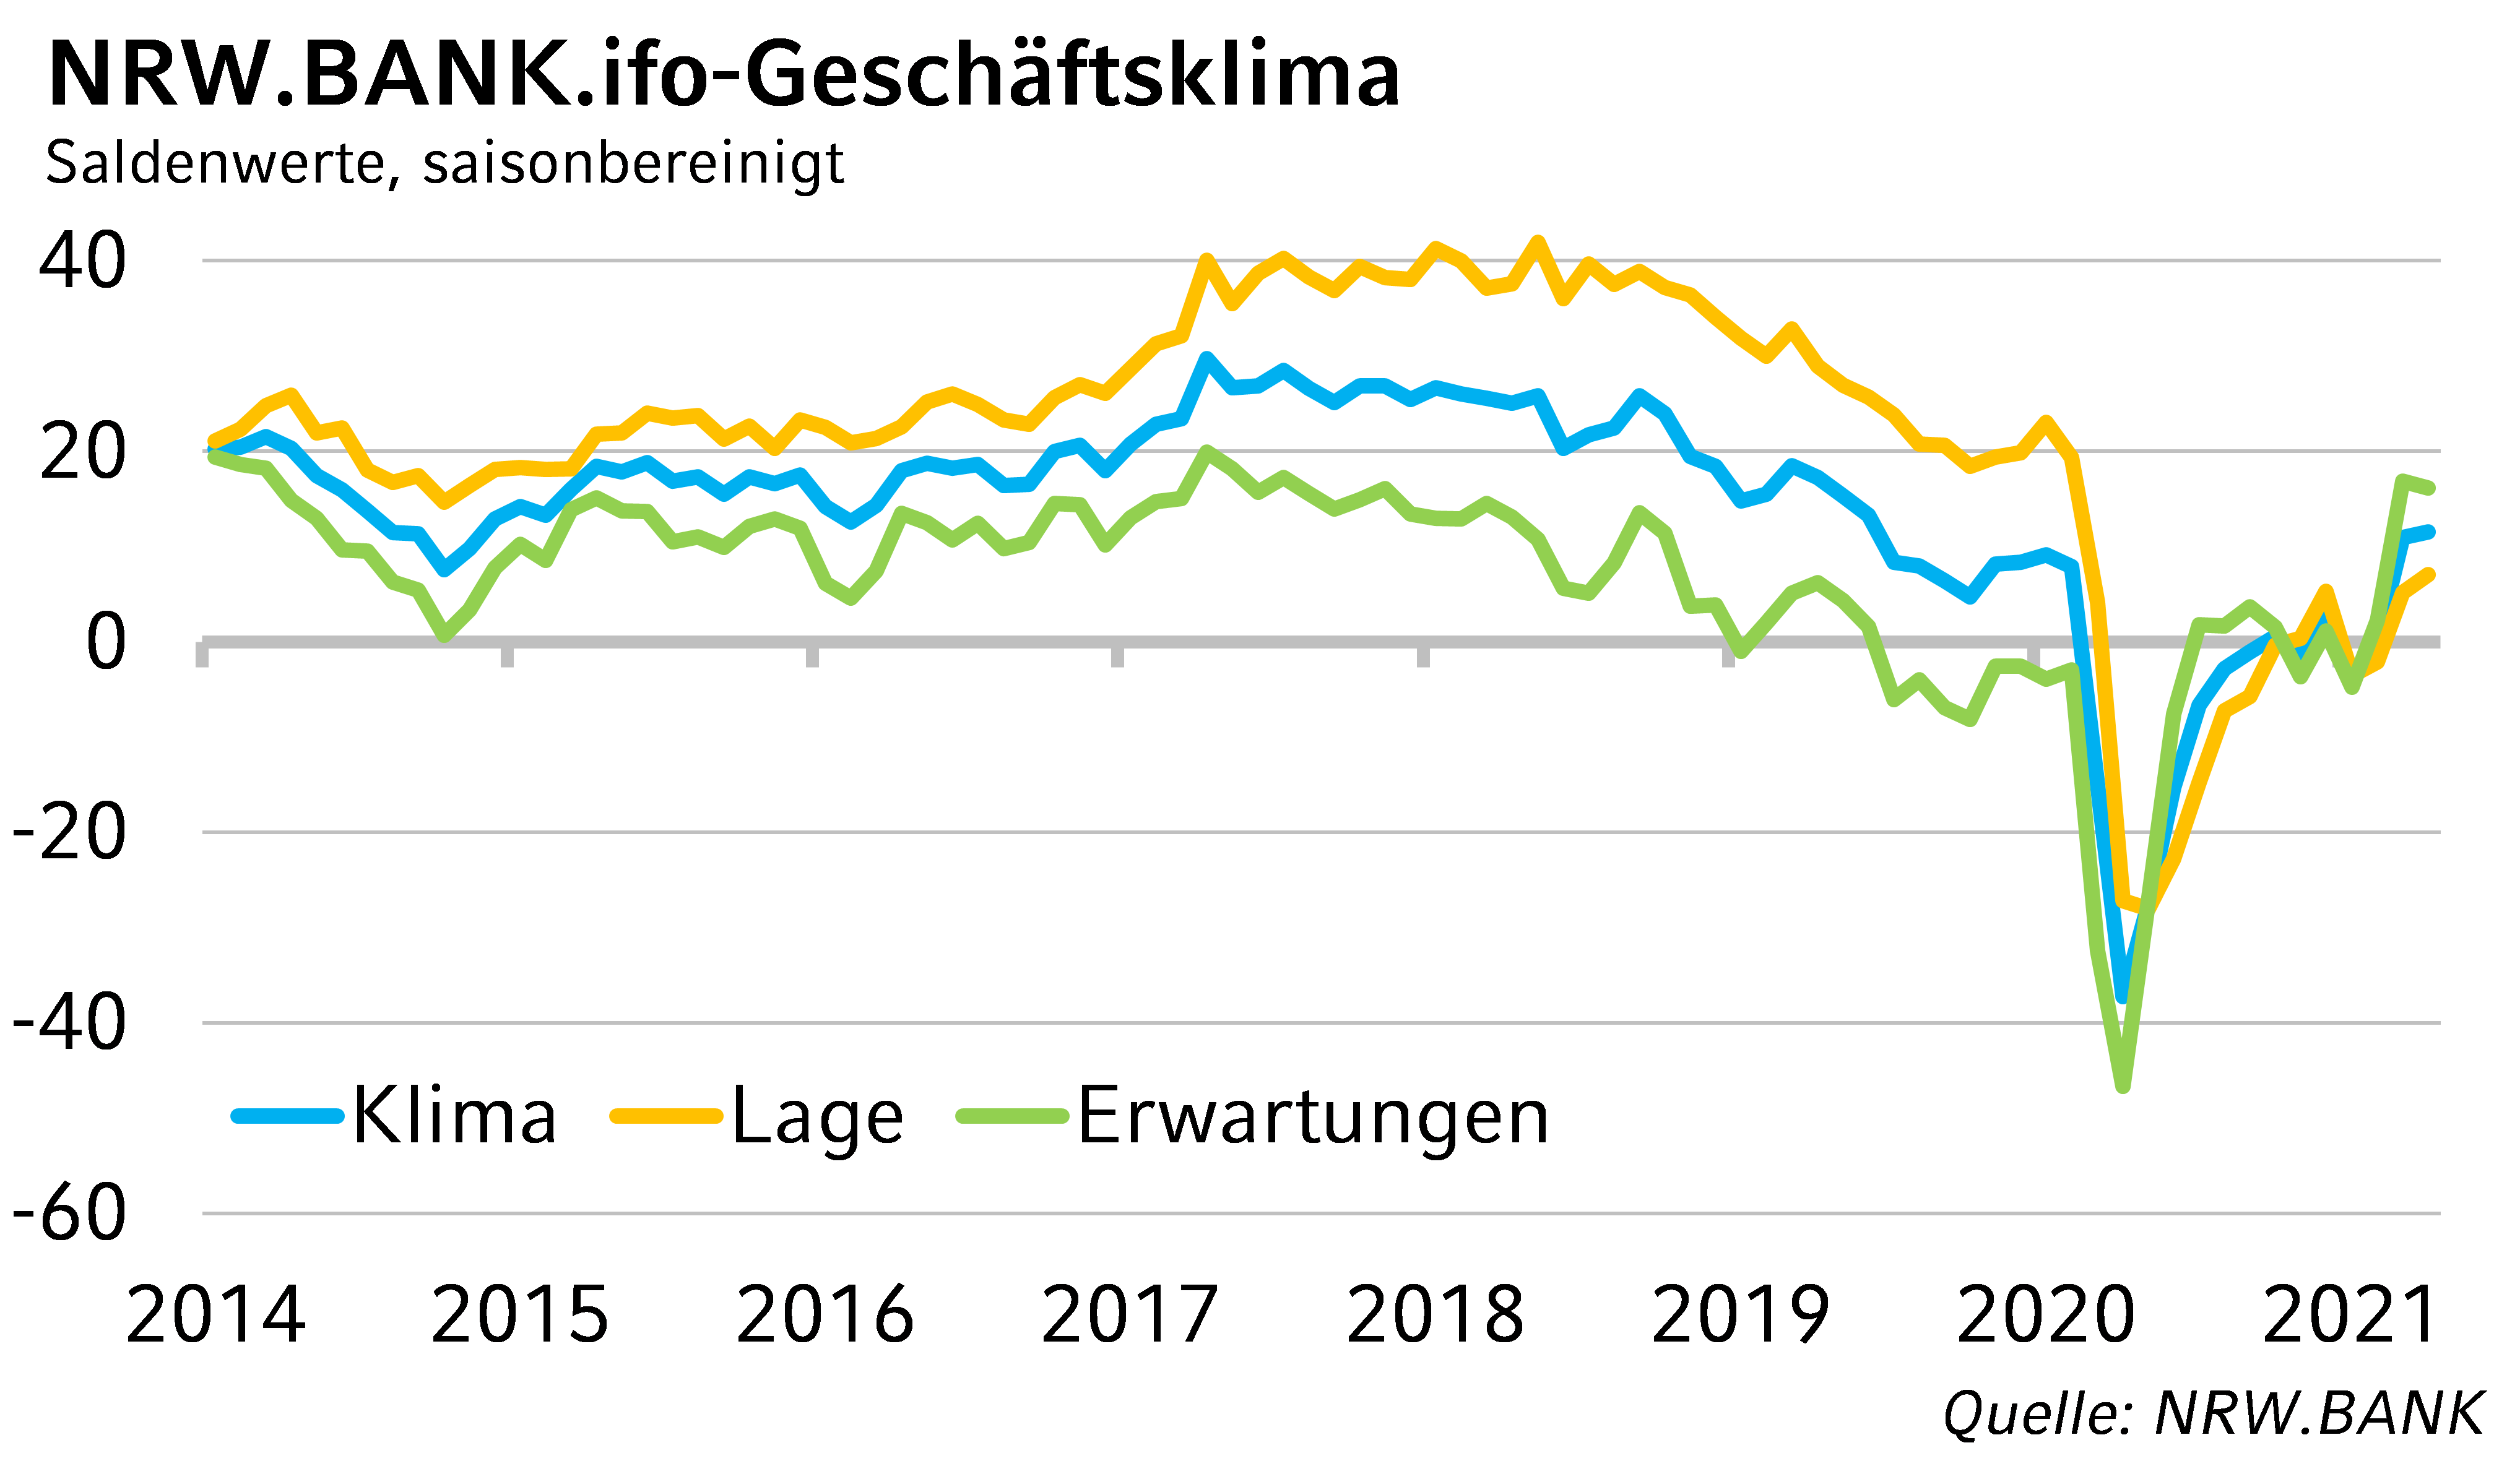 NRW.BANK.ifo-Geschäftsklima April 2021: Materialengpässe bremsen Aufschwung der NRW-Wirtschaft